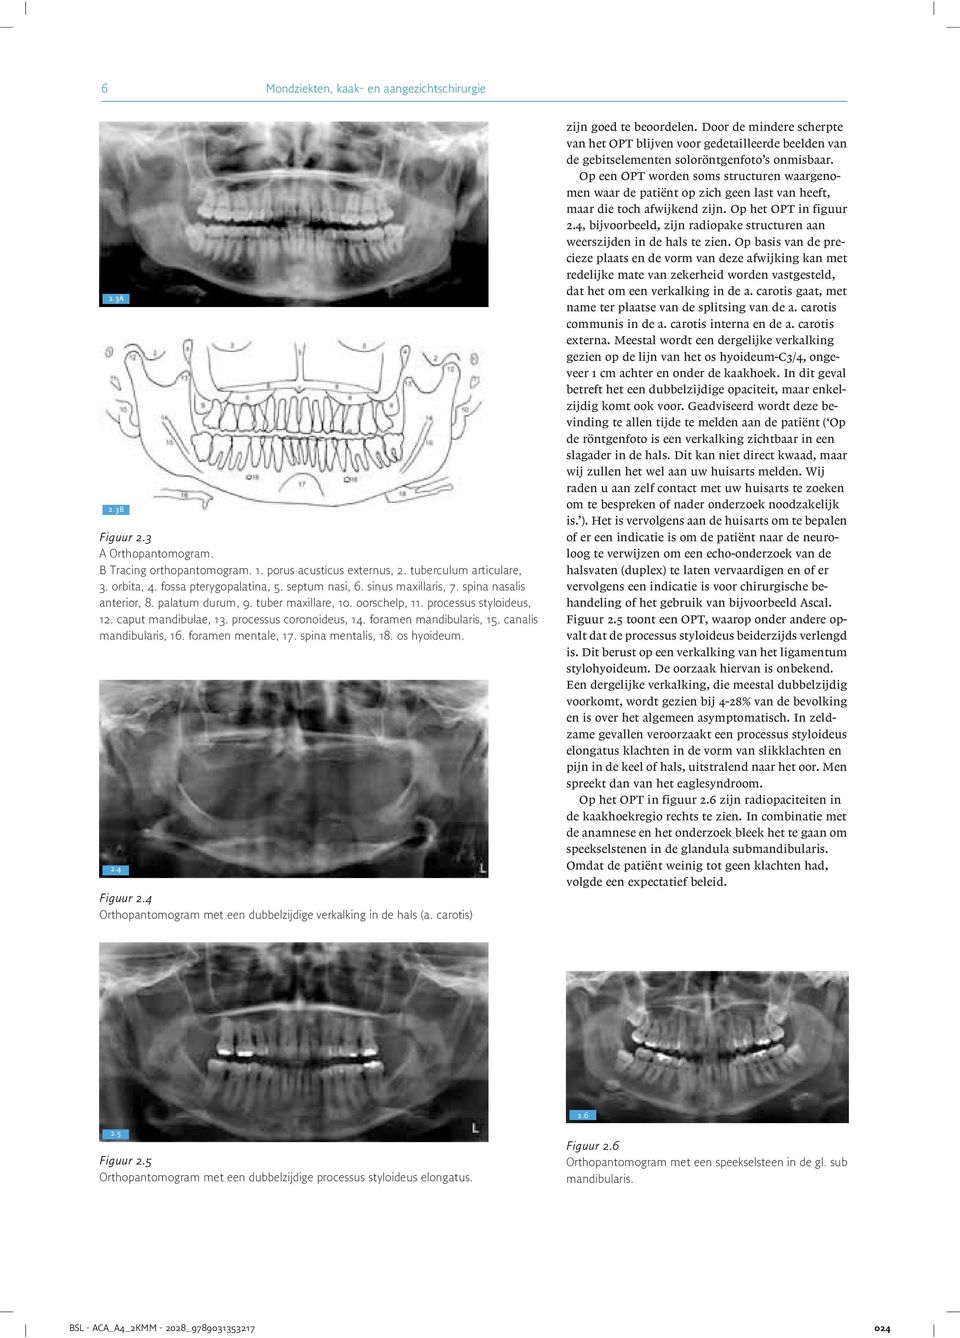 processus coronoideus, 14. foramen mandibularis, 15. canalis mandibularis, 16. foramen mentale, 17. spina mentalis, 18. os hyoideum. j 2:4 Figuur 2.